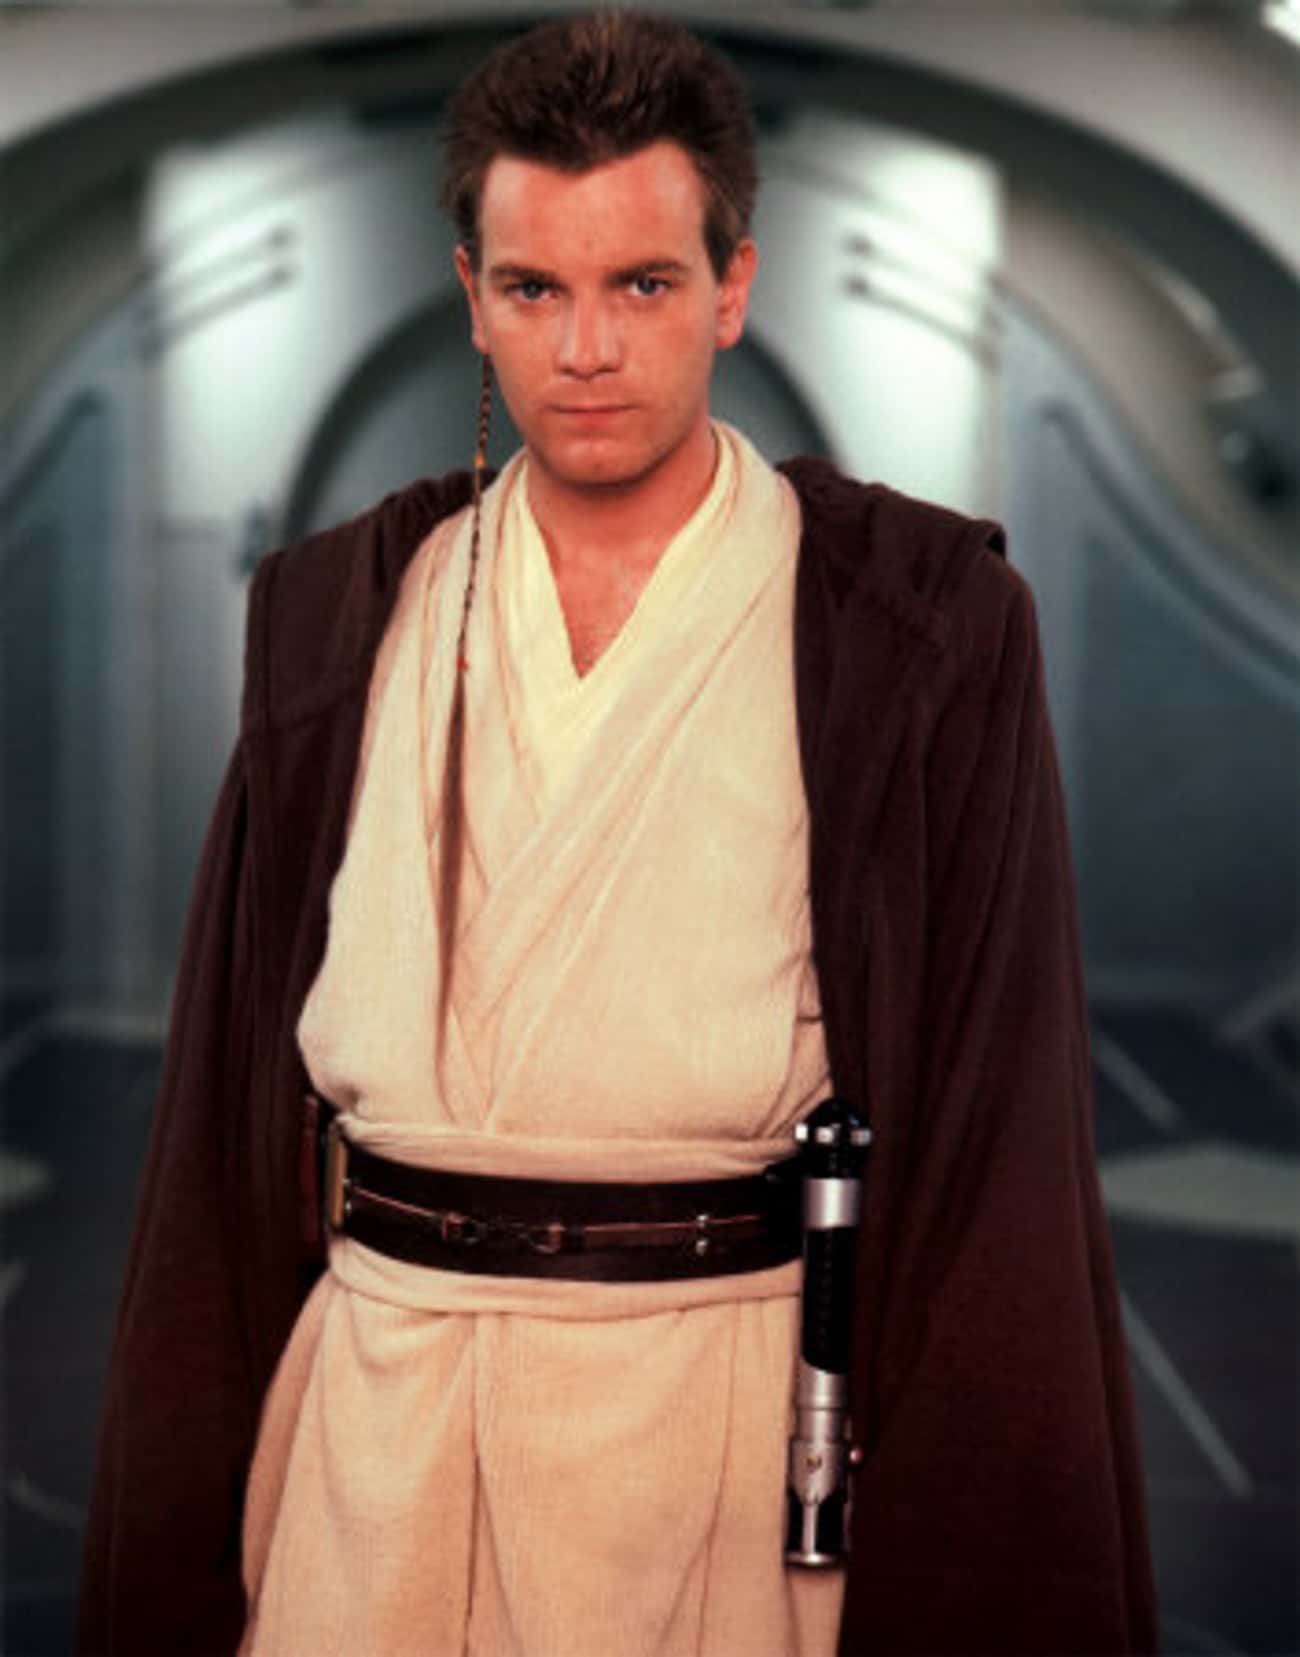 Ewan McGregor in Obi-Wan Kenobi Outfit